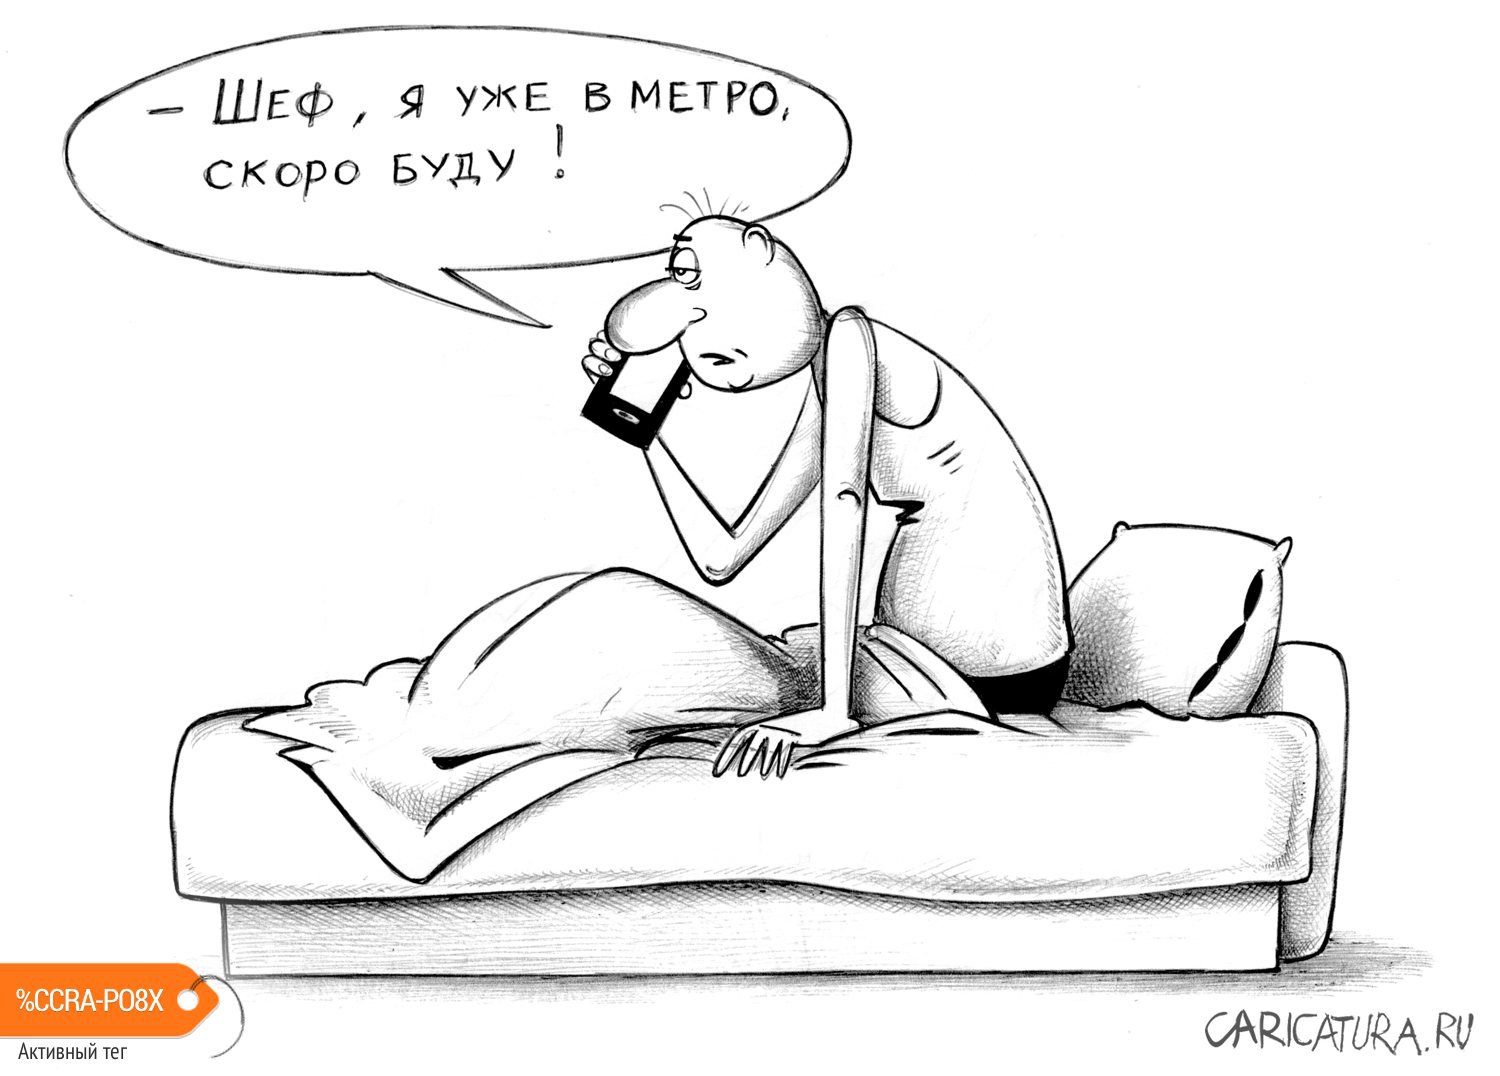 Карикатура "Уже в метро", Сергей Корсун